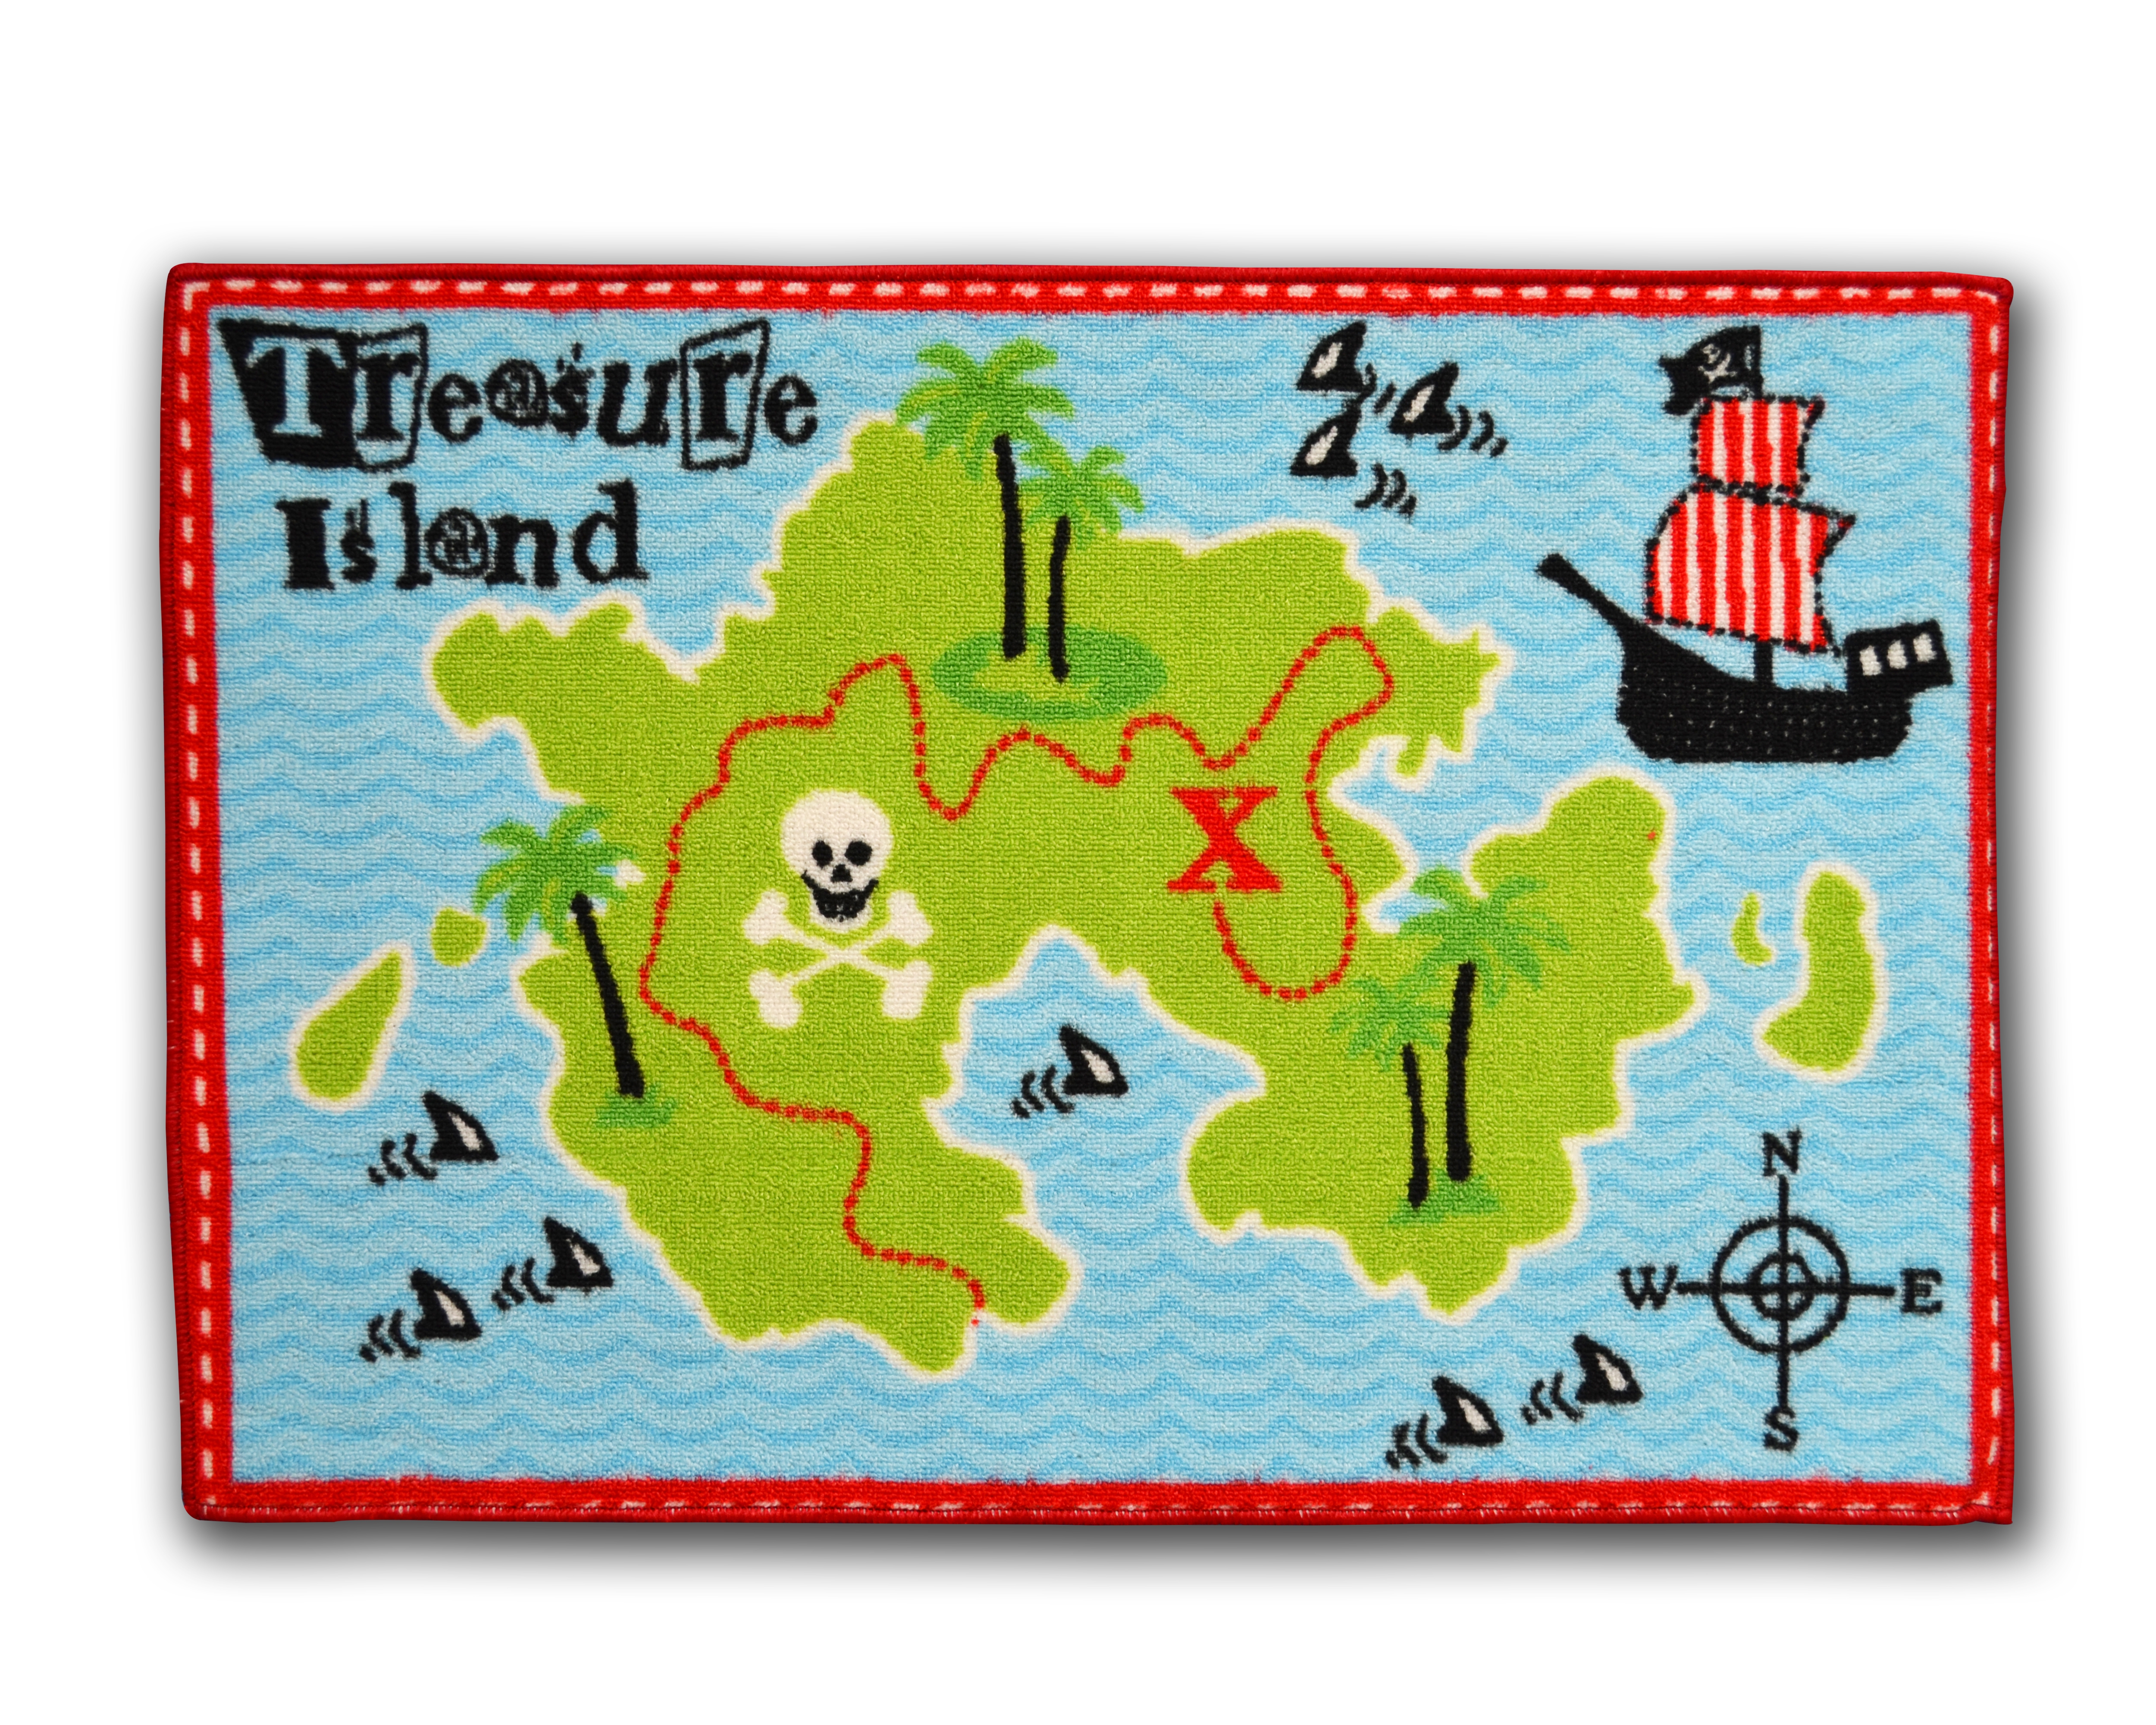 Designer Mat 'Treasure Island' Kids Rug